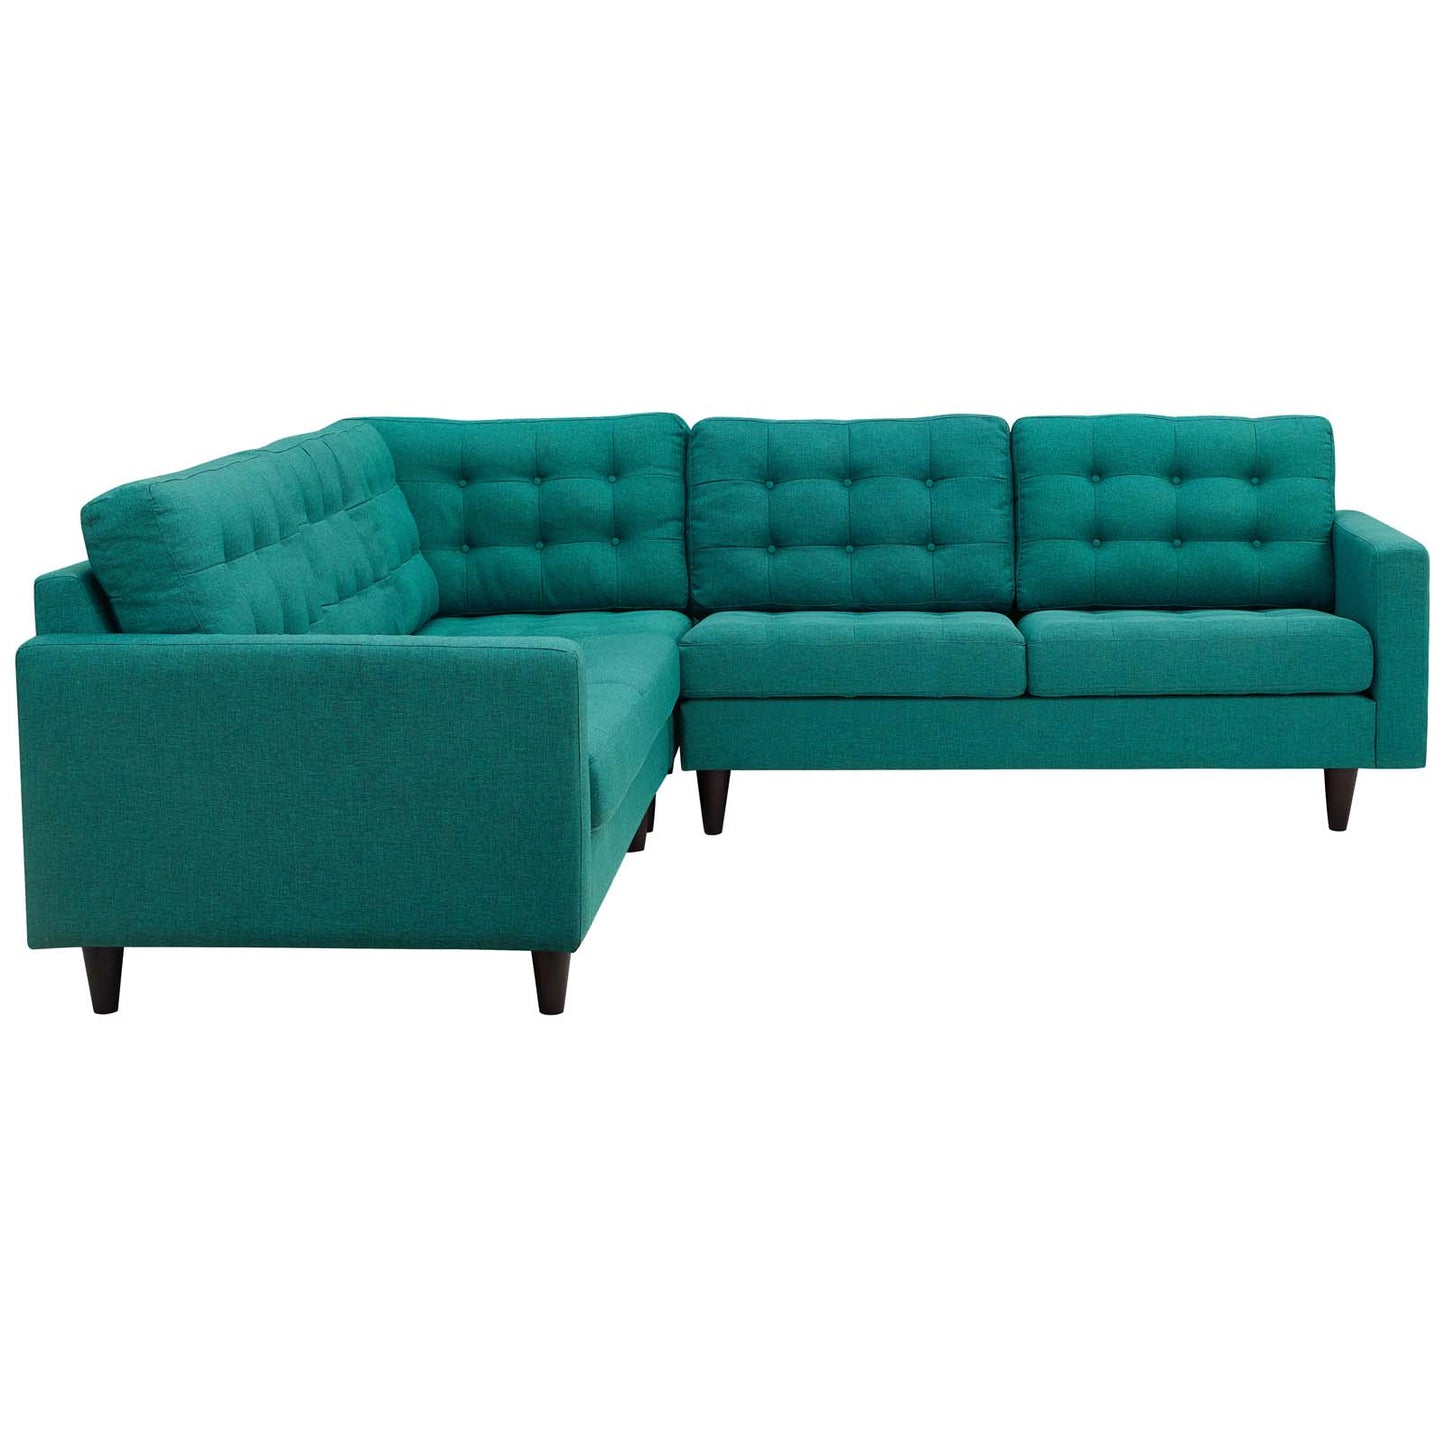 Empress 3 Piece Upholstered Fabric Sectional Sofa Set Teal EEI-1417-TEA